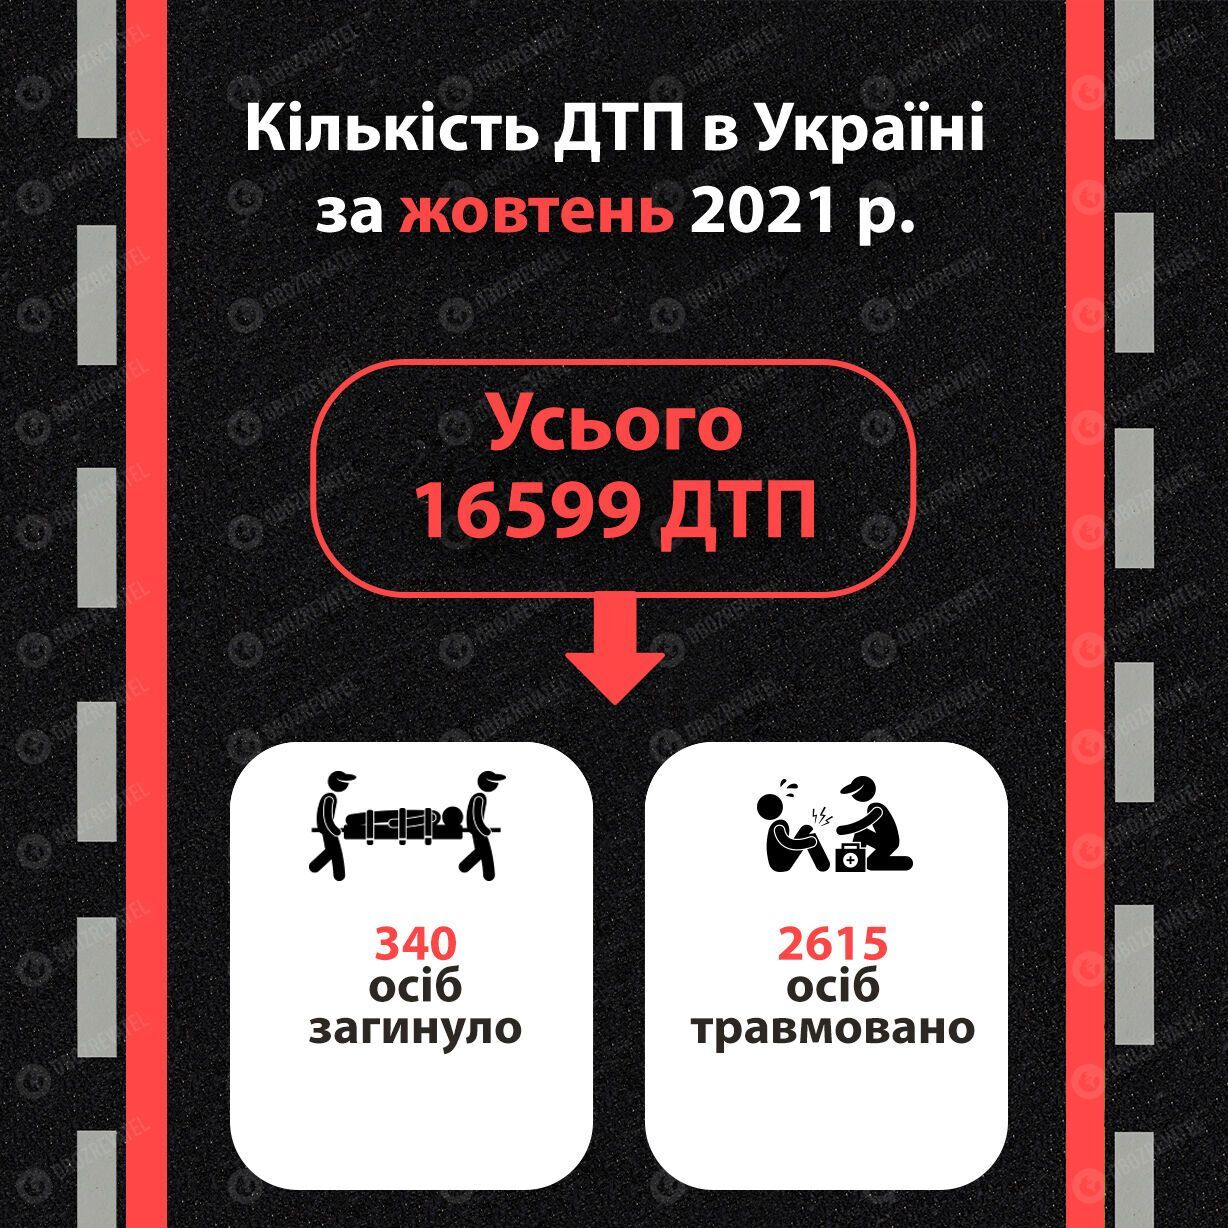 Статистика ДТП в Україні у жовтні 2021 року